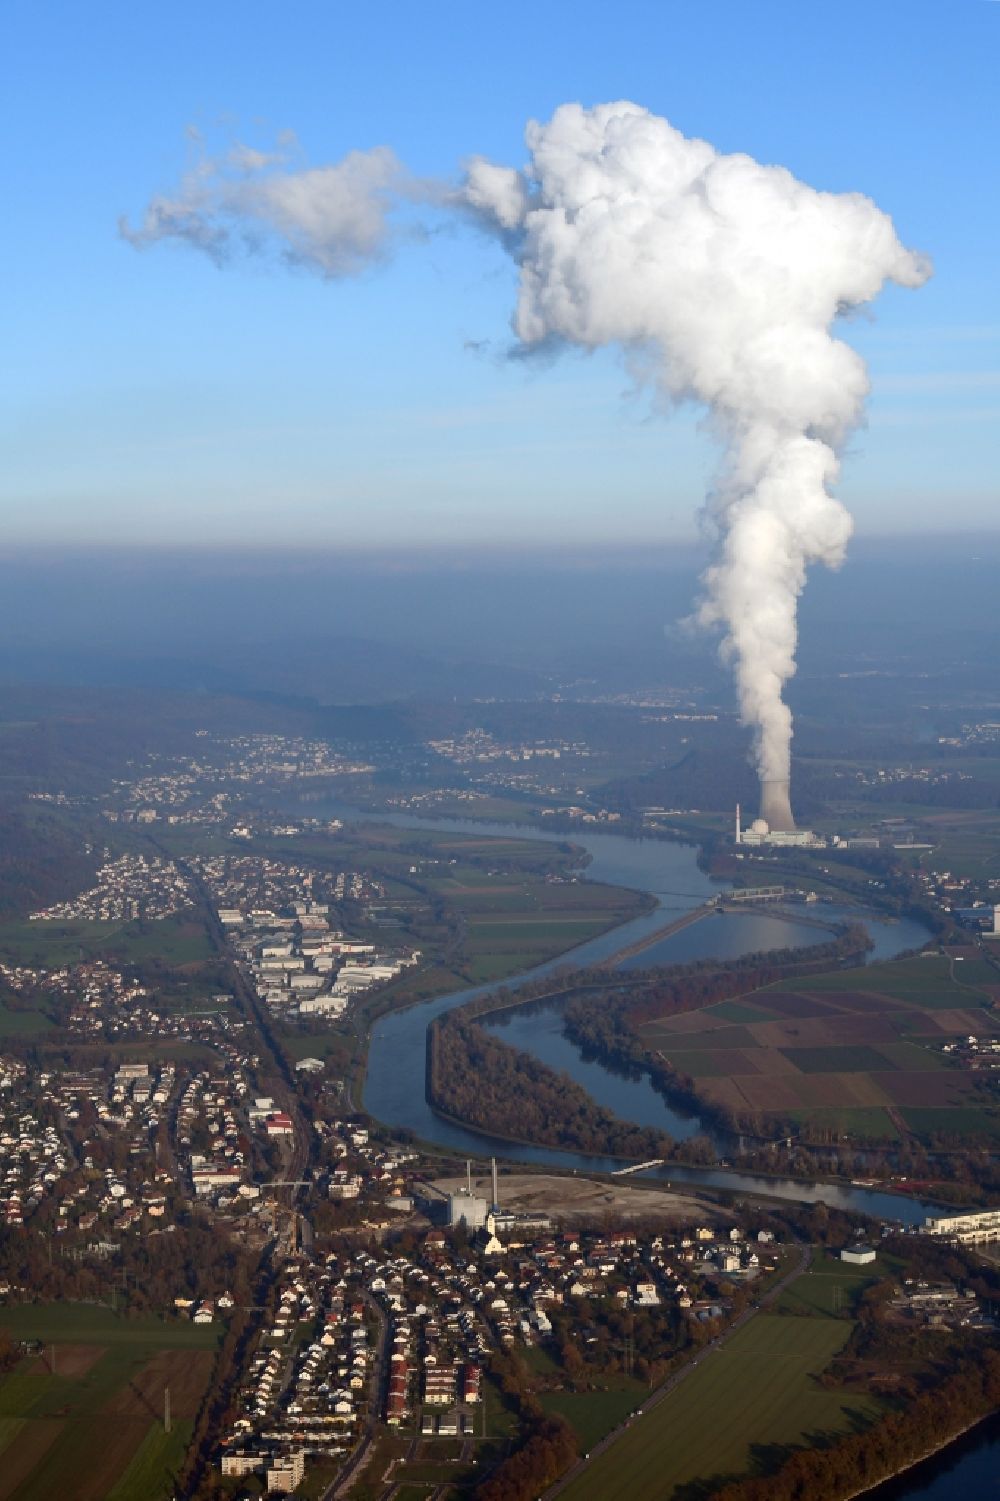 Luftaufnahme Albbruck - Ortskern am Uferbereich des Rhein - Flußverlaufes in Albbruck im Bundesland Baden-Württemberg, Deutschland. Dahinter das Atomkraftwerk Leibstadt in der Schweiz